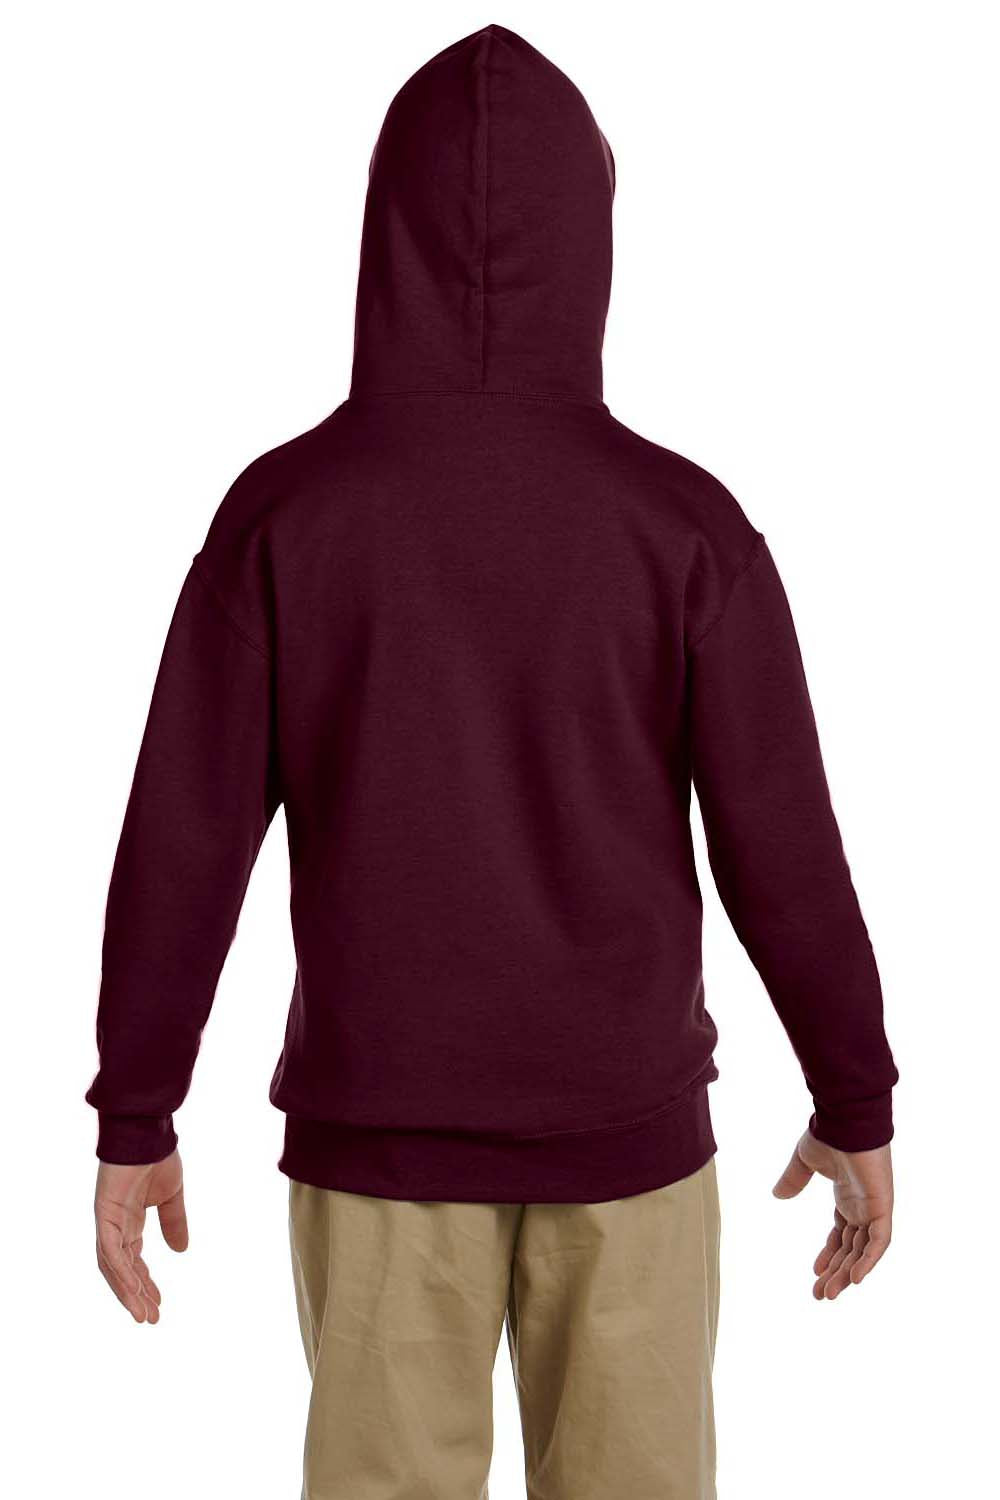 Jerzees 996Y Youth NuBlend Fleece Hooded Sweatshirt Hoodie Maroon Back